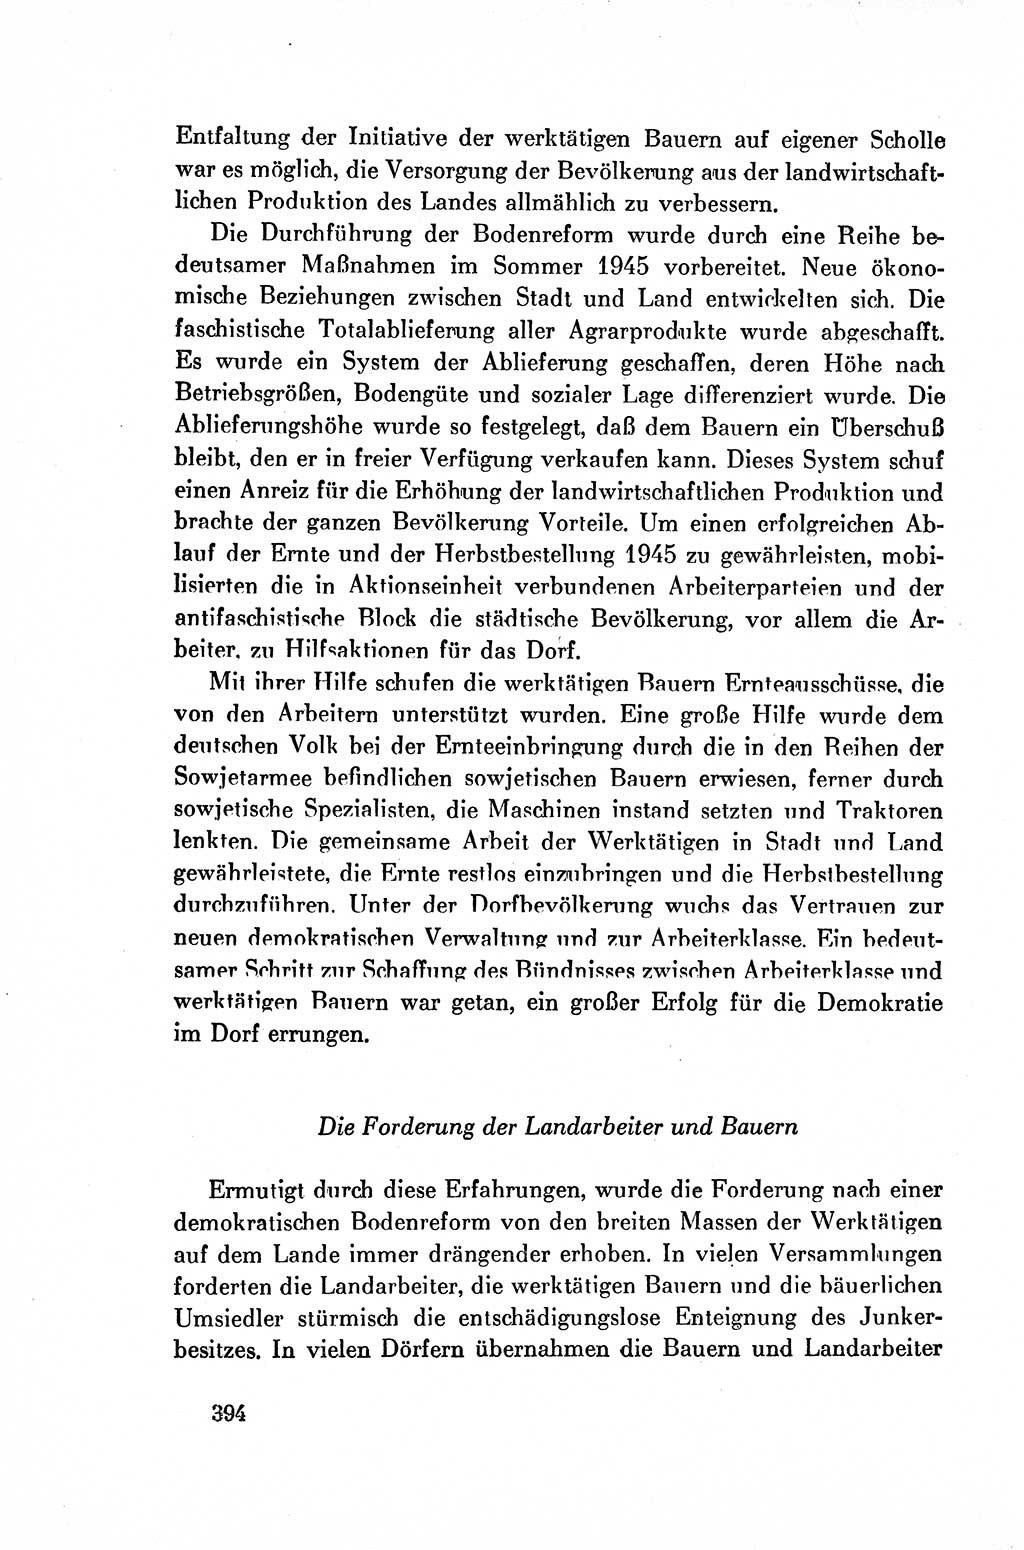 Dokumente der Sozialistischen Einheitspartei Deutschlands (SED) [Deutsche Demokratische Republik (DDR)] 1954-1955, Seite 394 (Dok. SED DDR 1954-1955, S. 394)